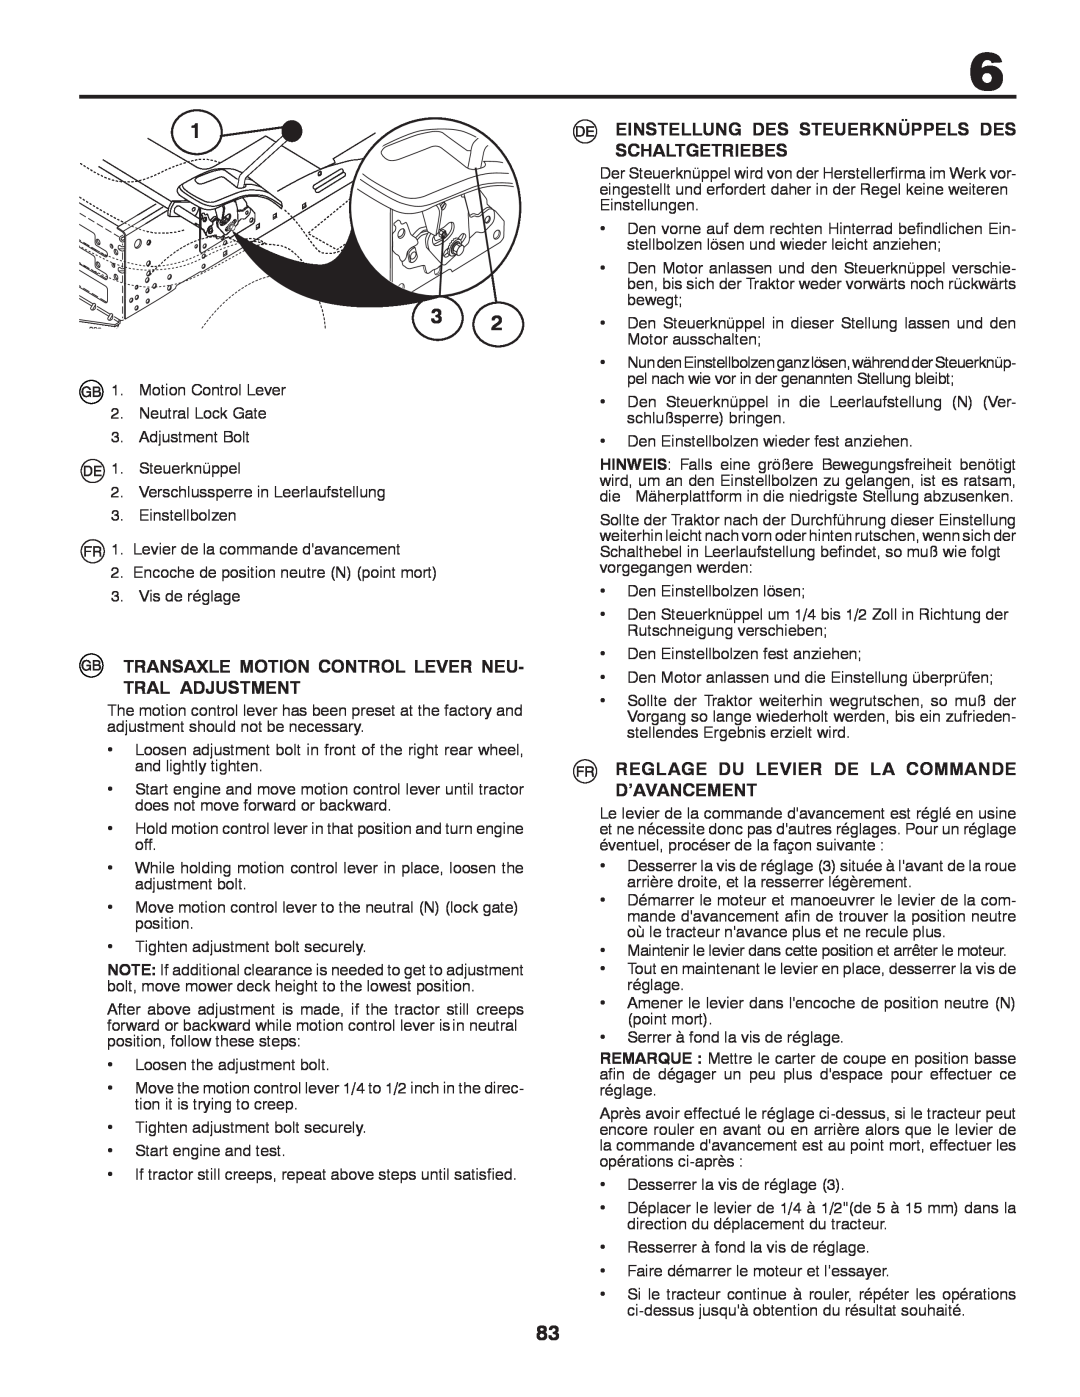 Husqvarna CTH140TWIN instruction manual Reglage Du Levier De La Commande D’Avancement 